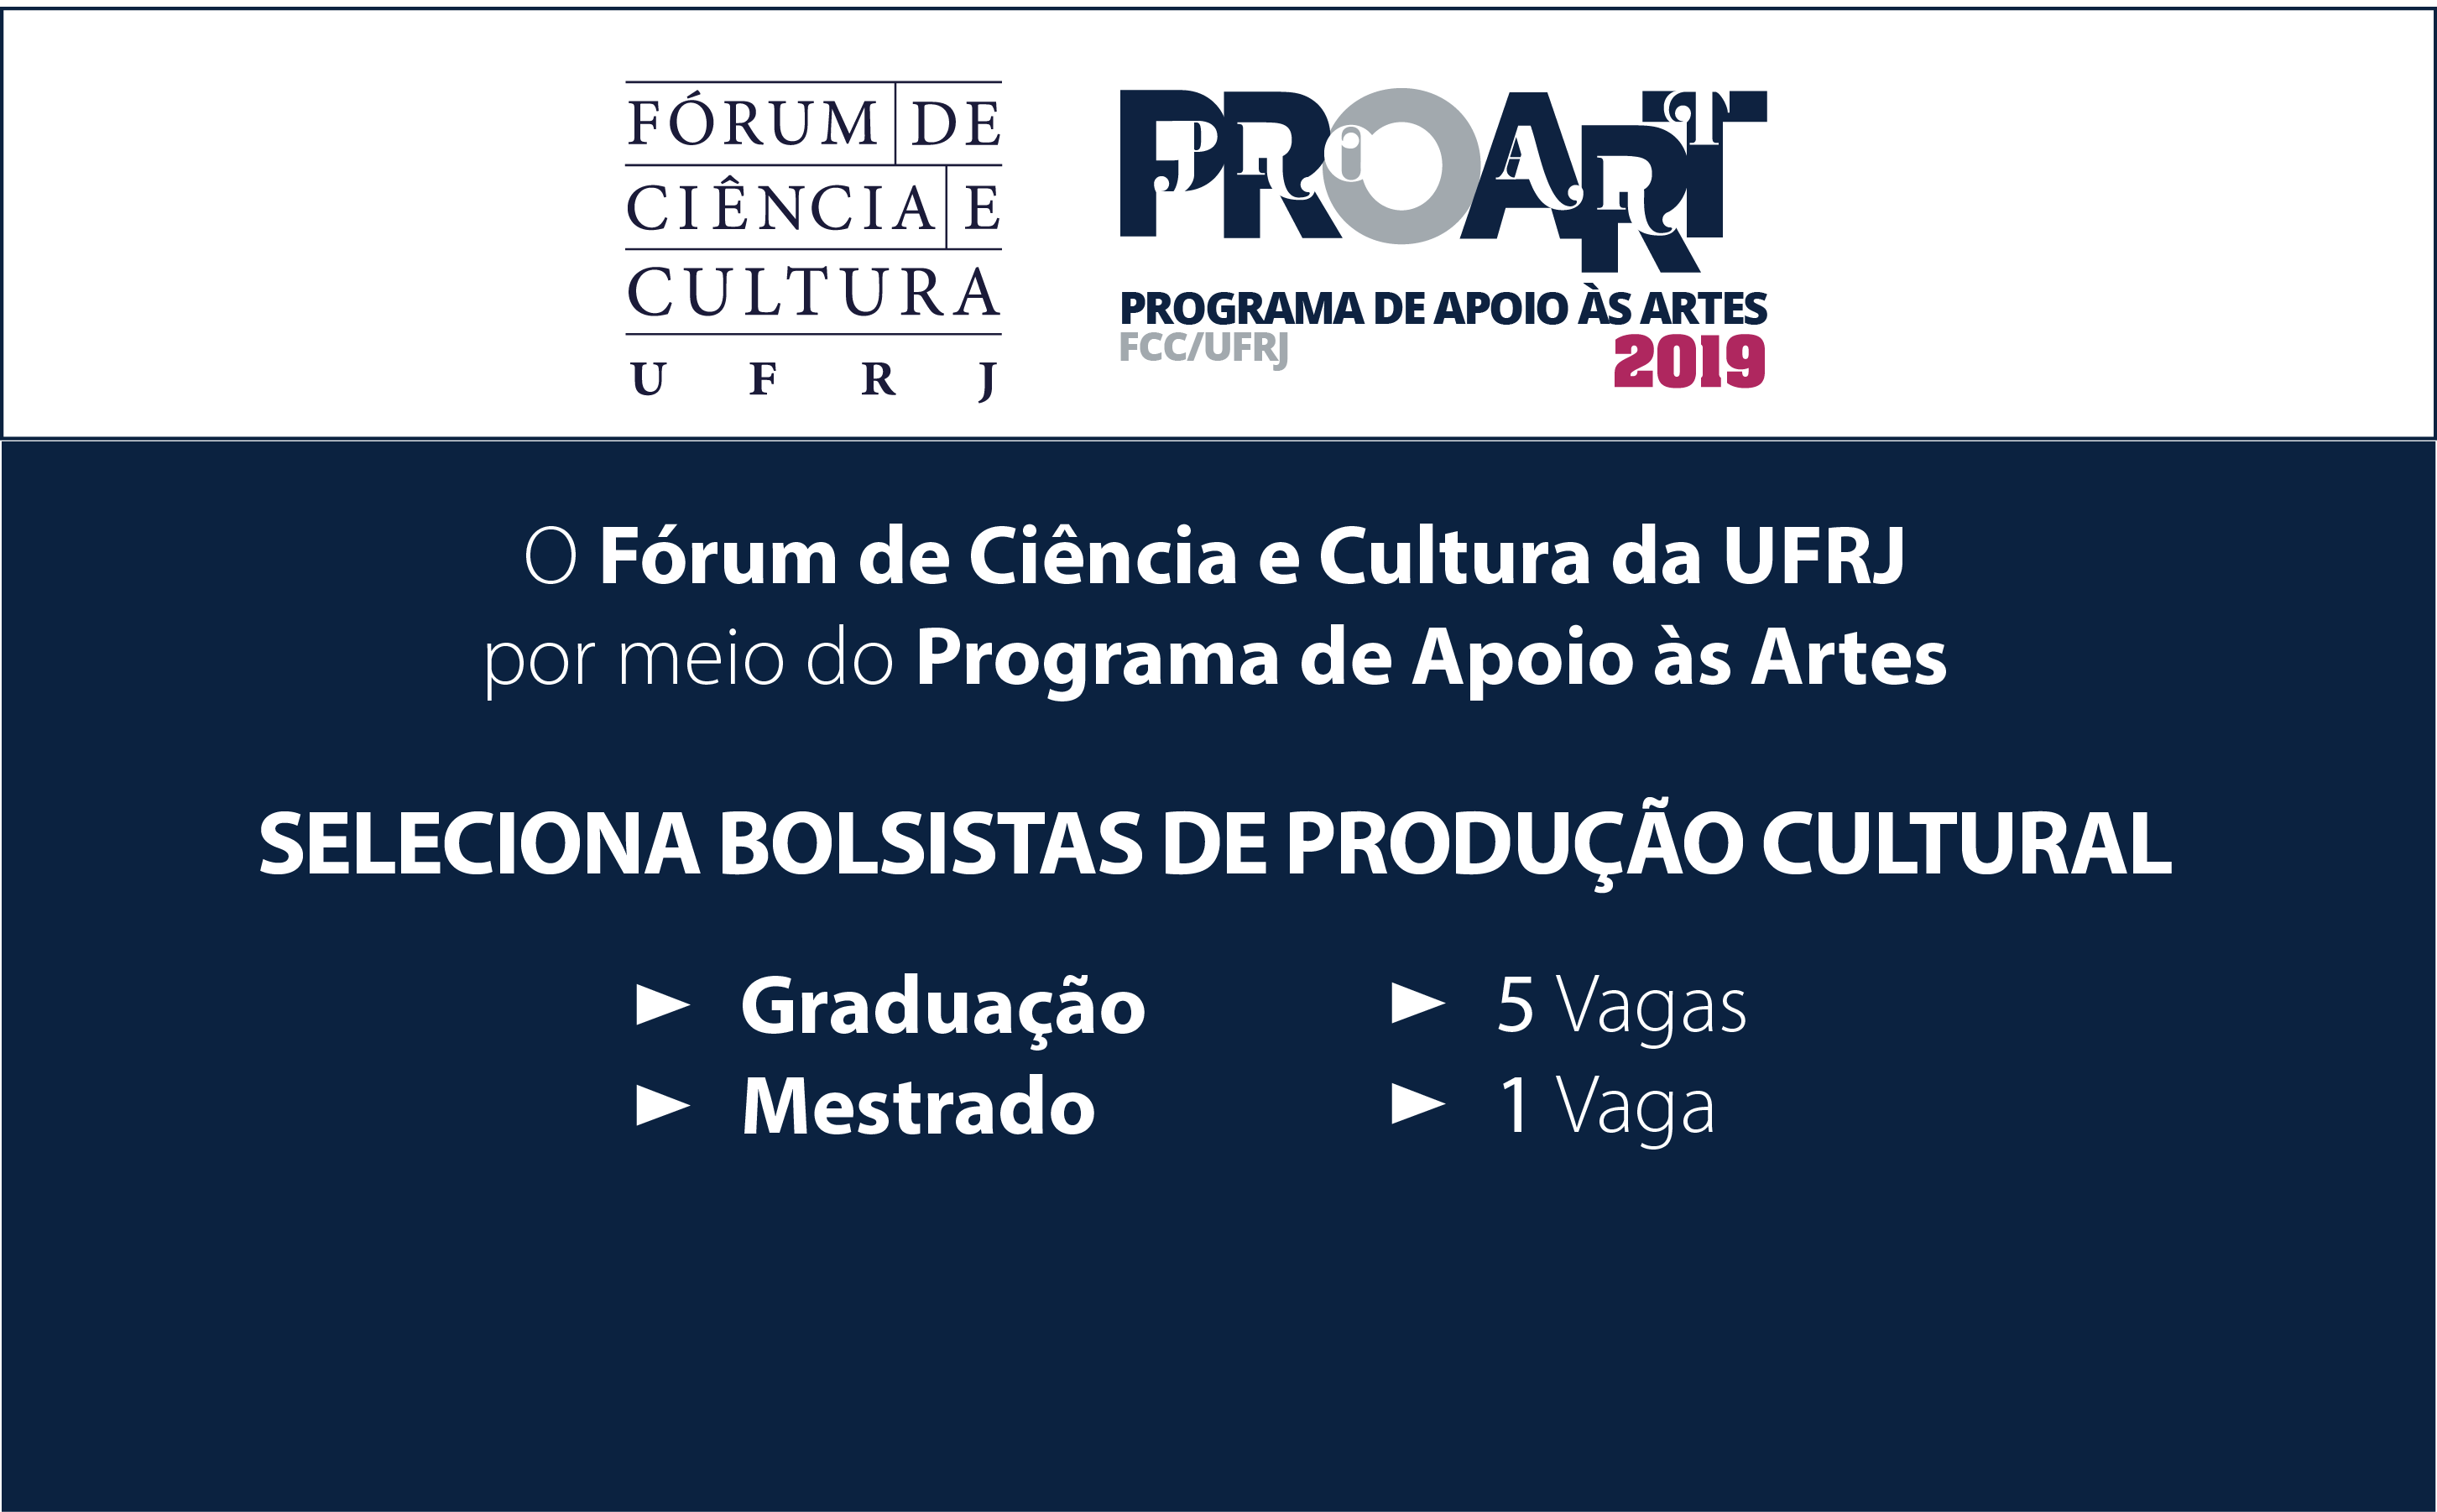 Fórum seleciona bolsistas de graduação e mestrado na área de Produção Cultural